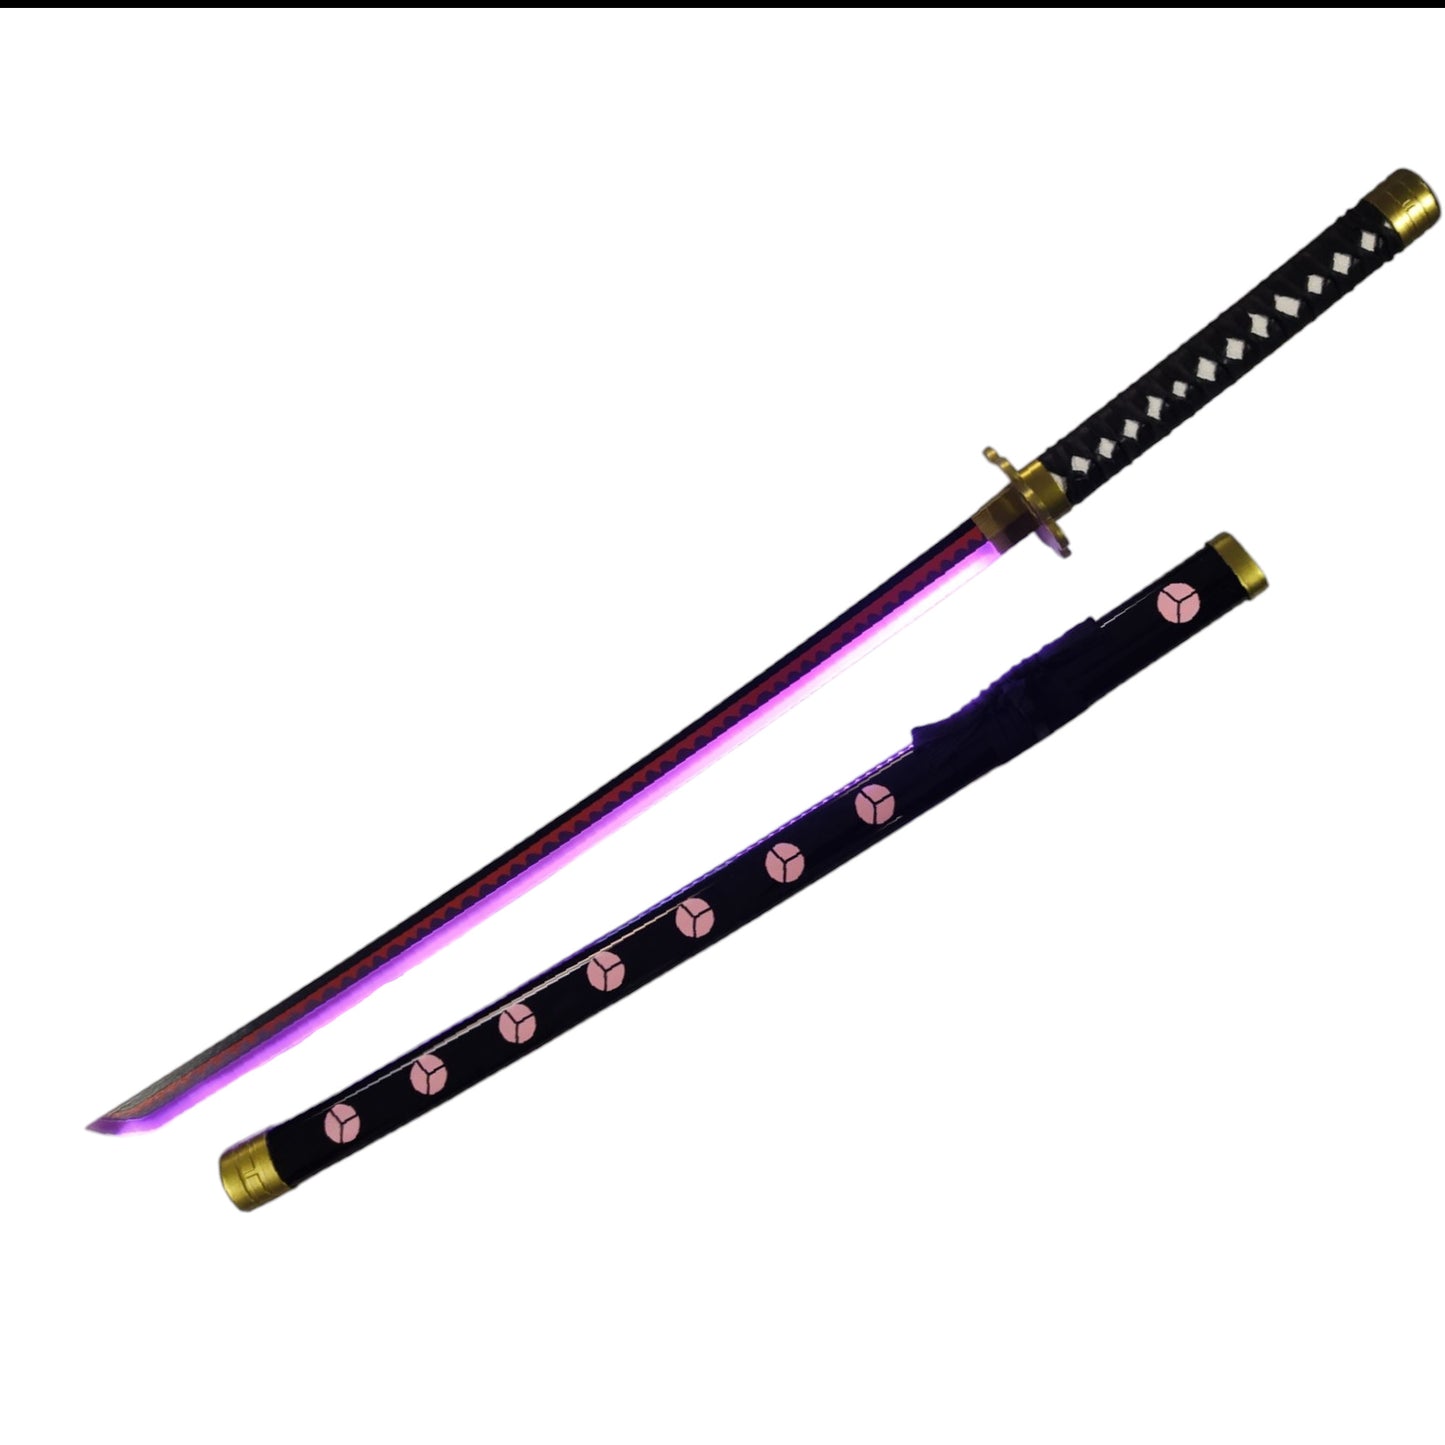 One Piece Light Up Bamboo Replica Swords